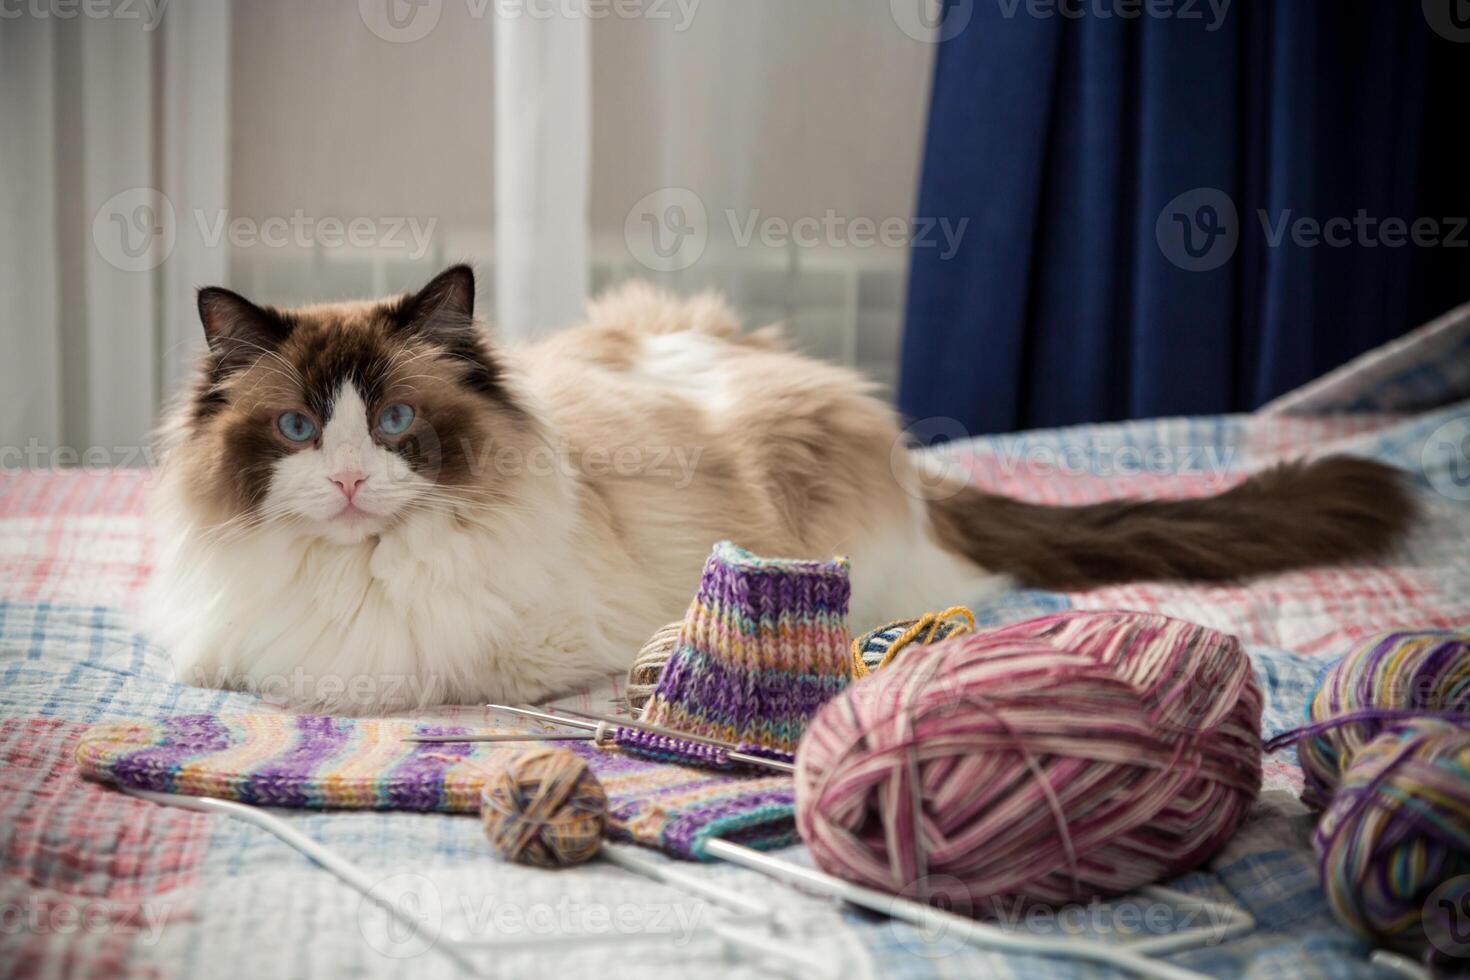 gekleurde draden, breiwerk naalden en andere items voor hand- breiwerk en een schattig huiselijk kat lappenpop foto